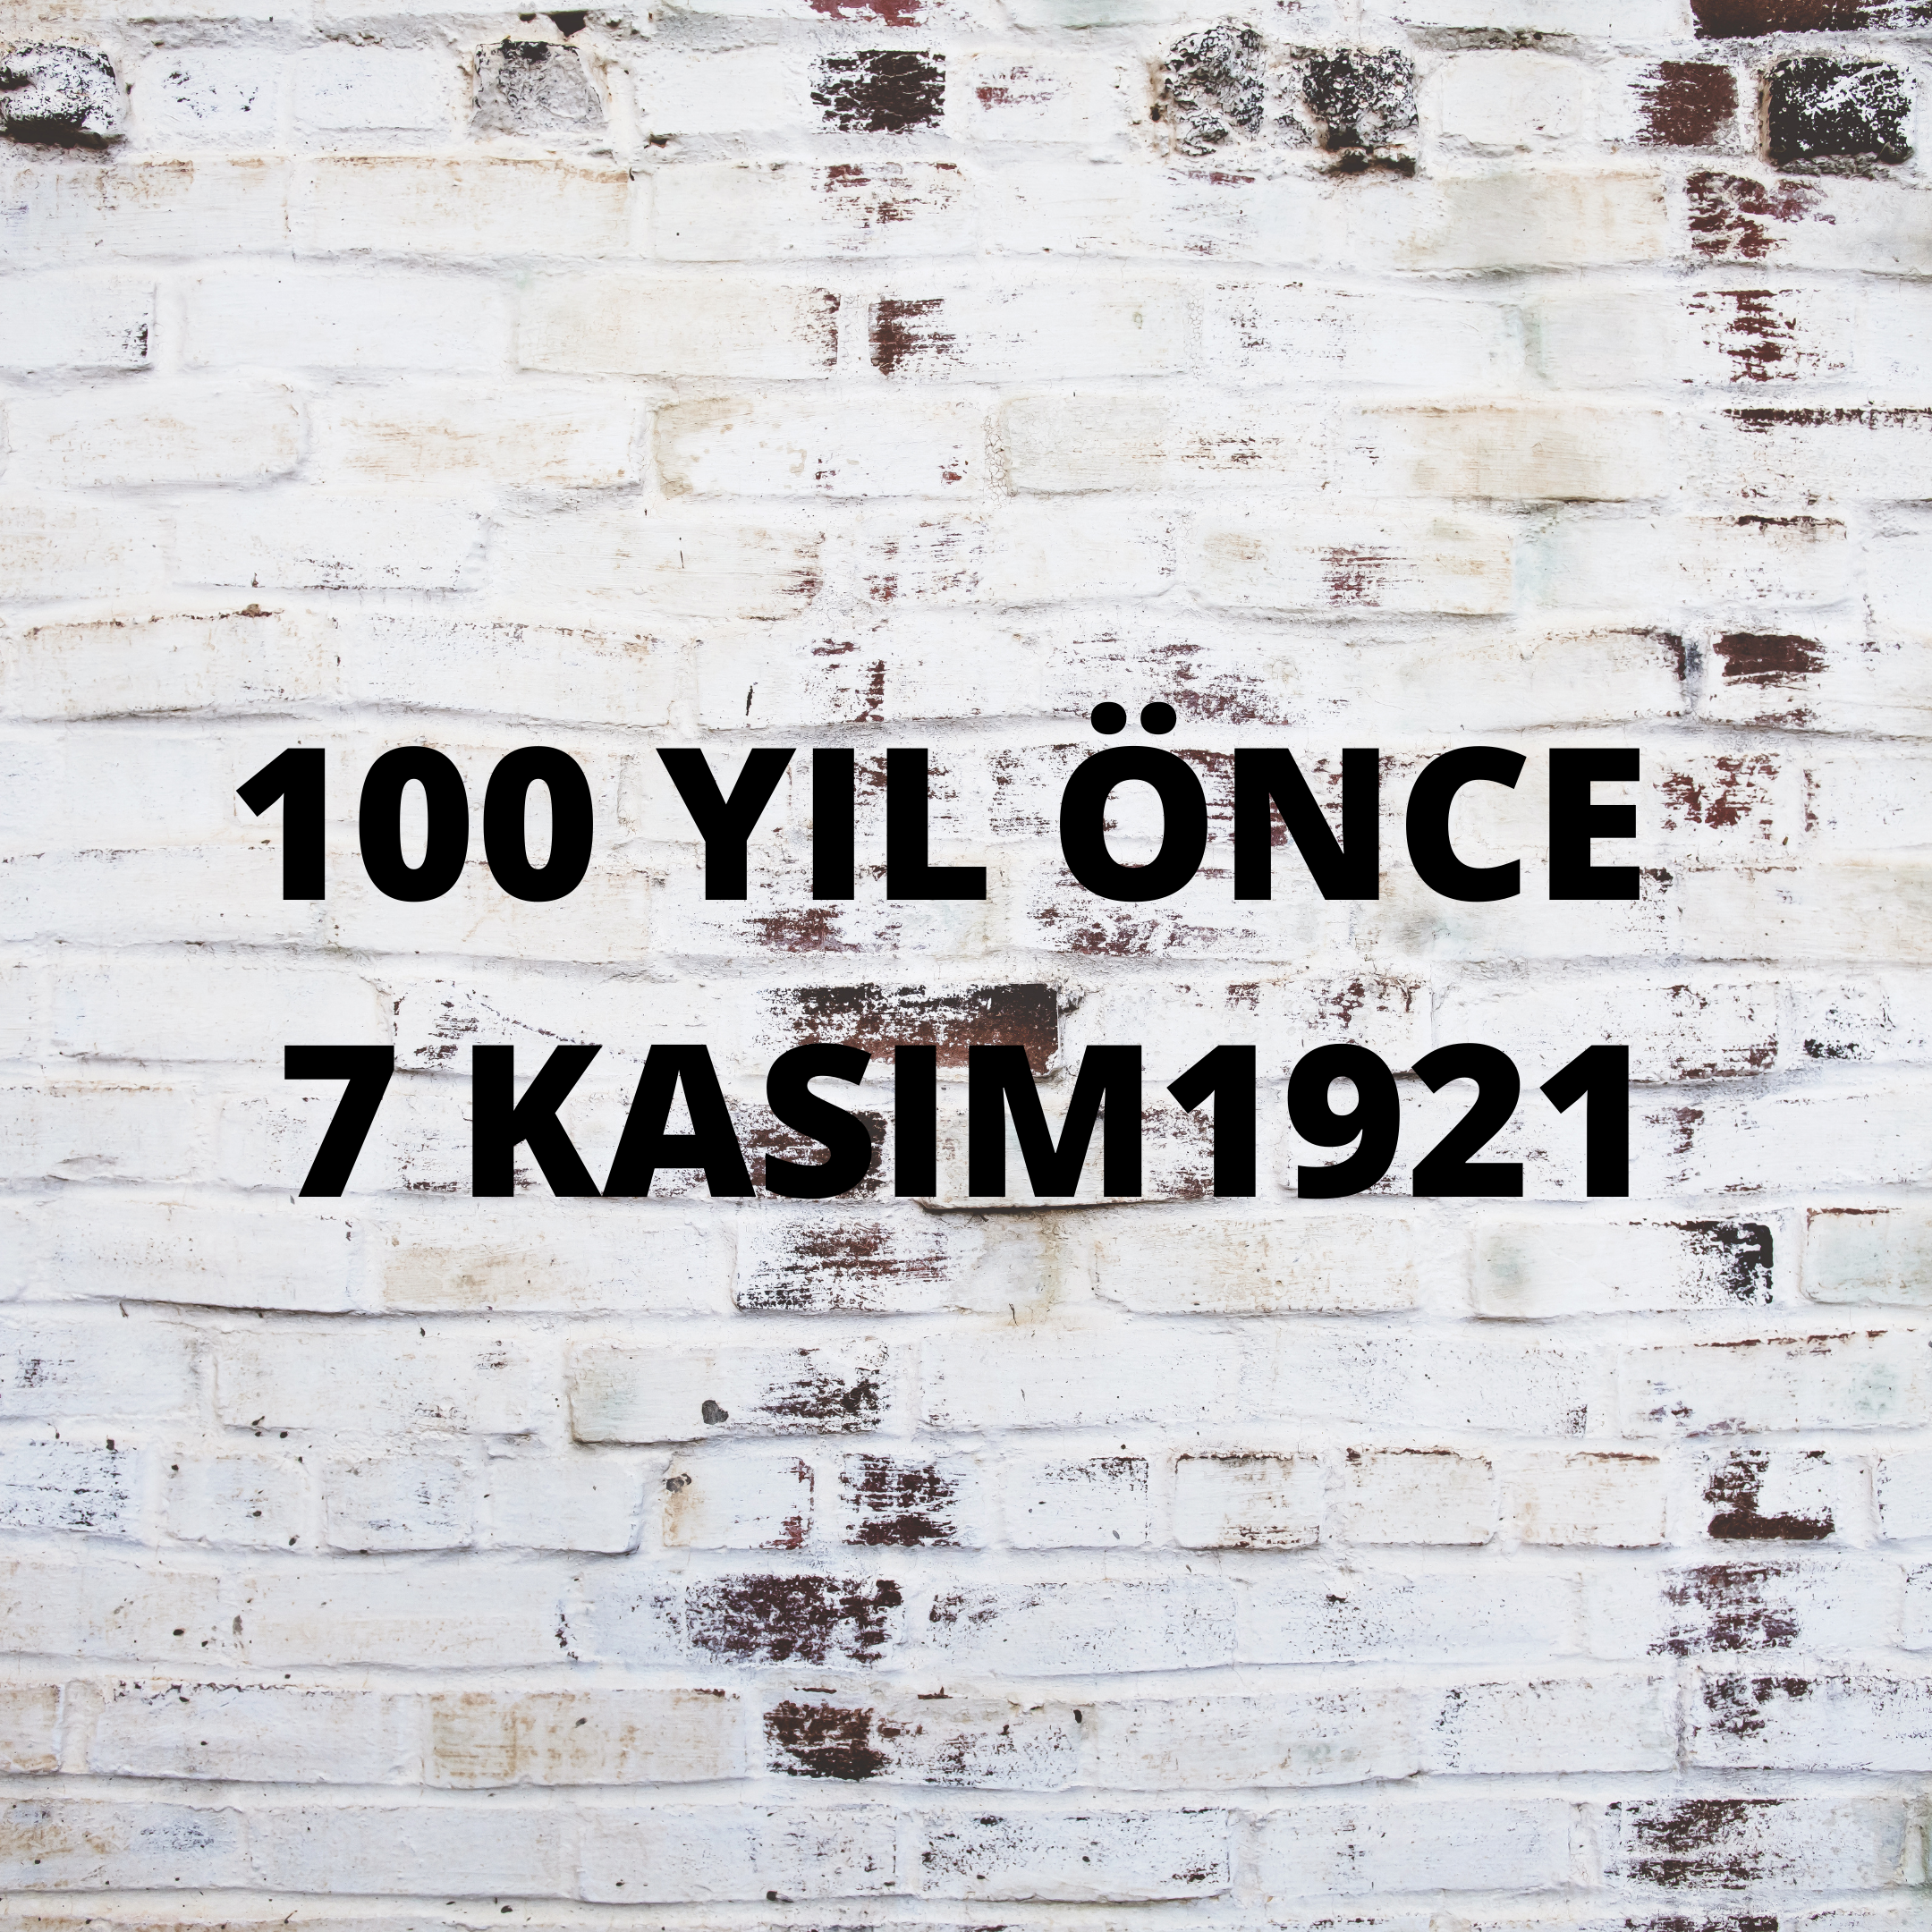 100 YIL ÖNCE 7 KASIM 1921